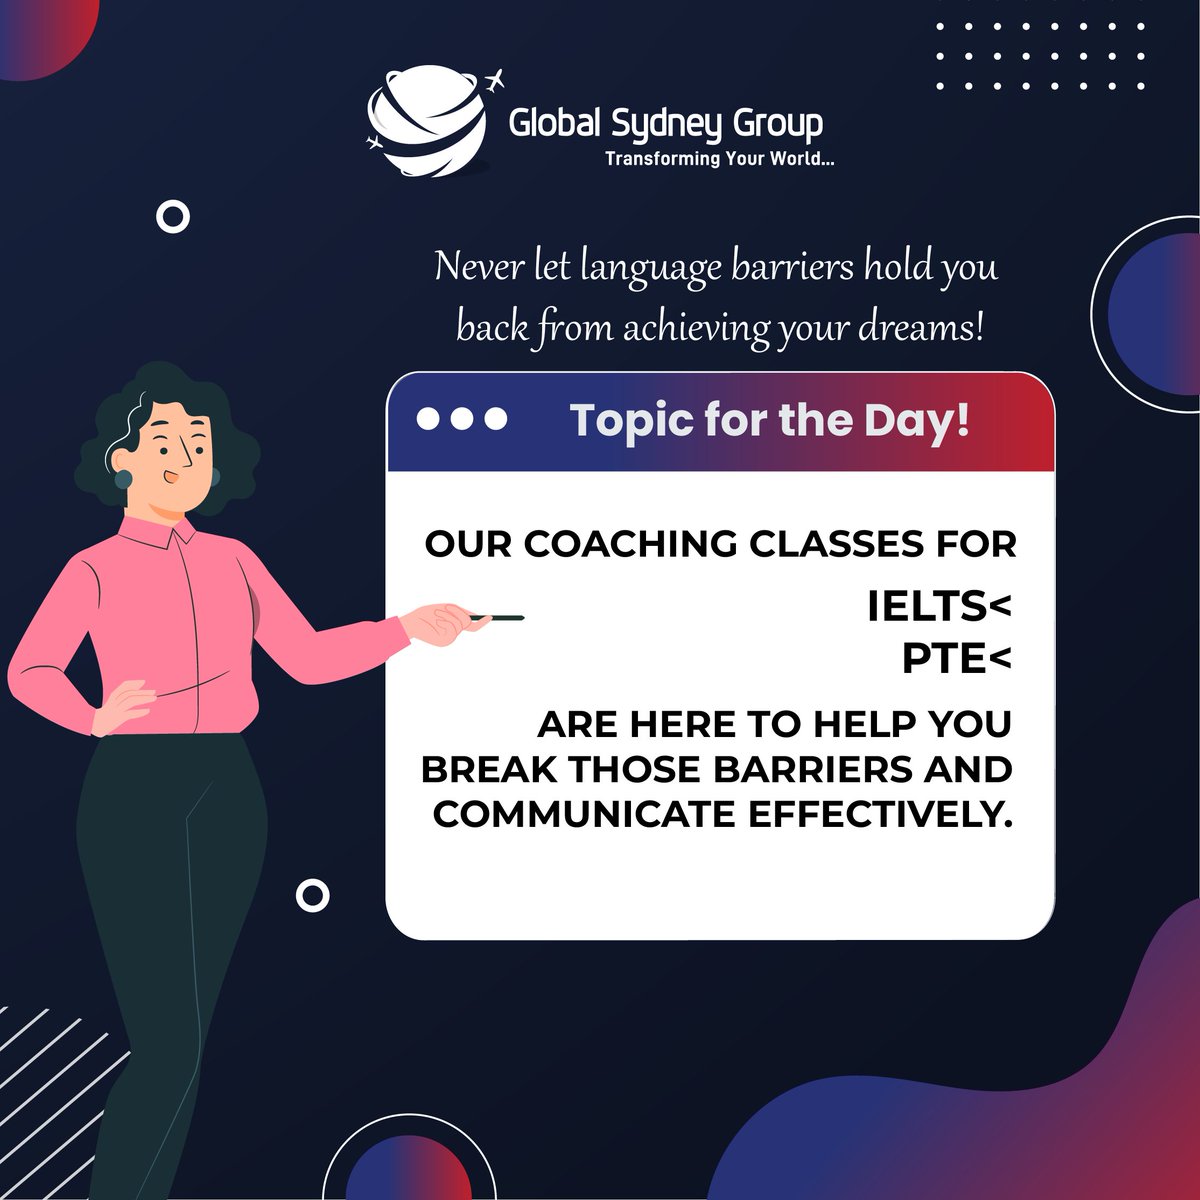 🌍🗣️Don't let language barriers limit your dreams!
.
.
.
.
.
.
#GlobalSydneyGroup
#BestImmigrationConsultant  #studyvisa #studyabroad  #language
 #studyabroad  #LanguageLearning